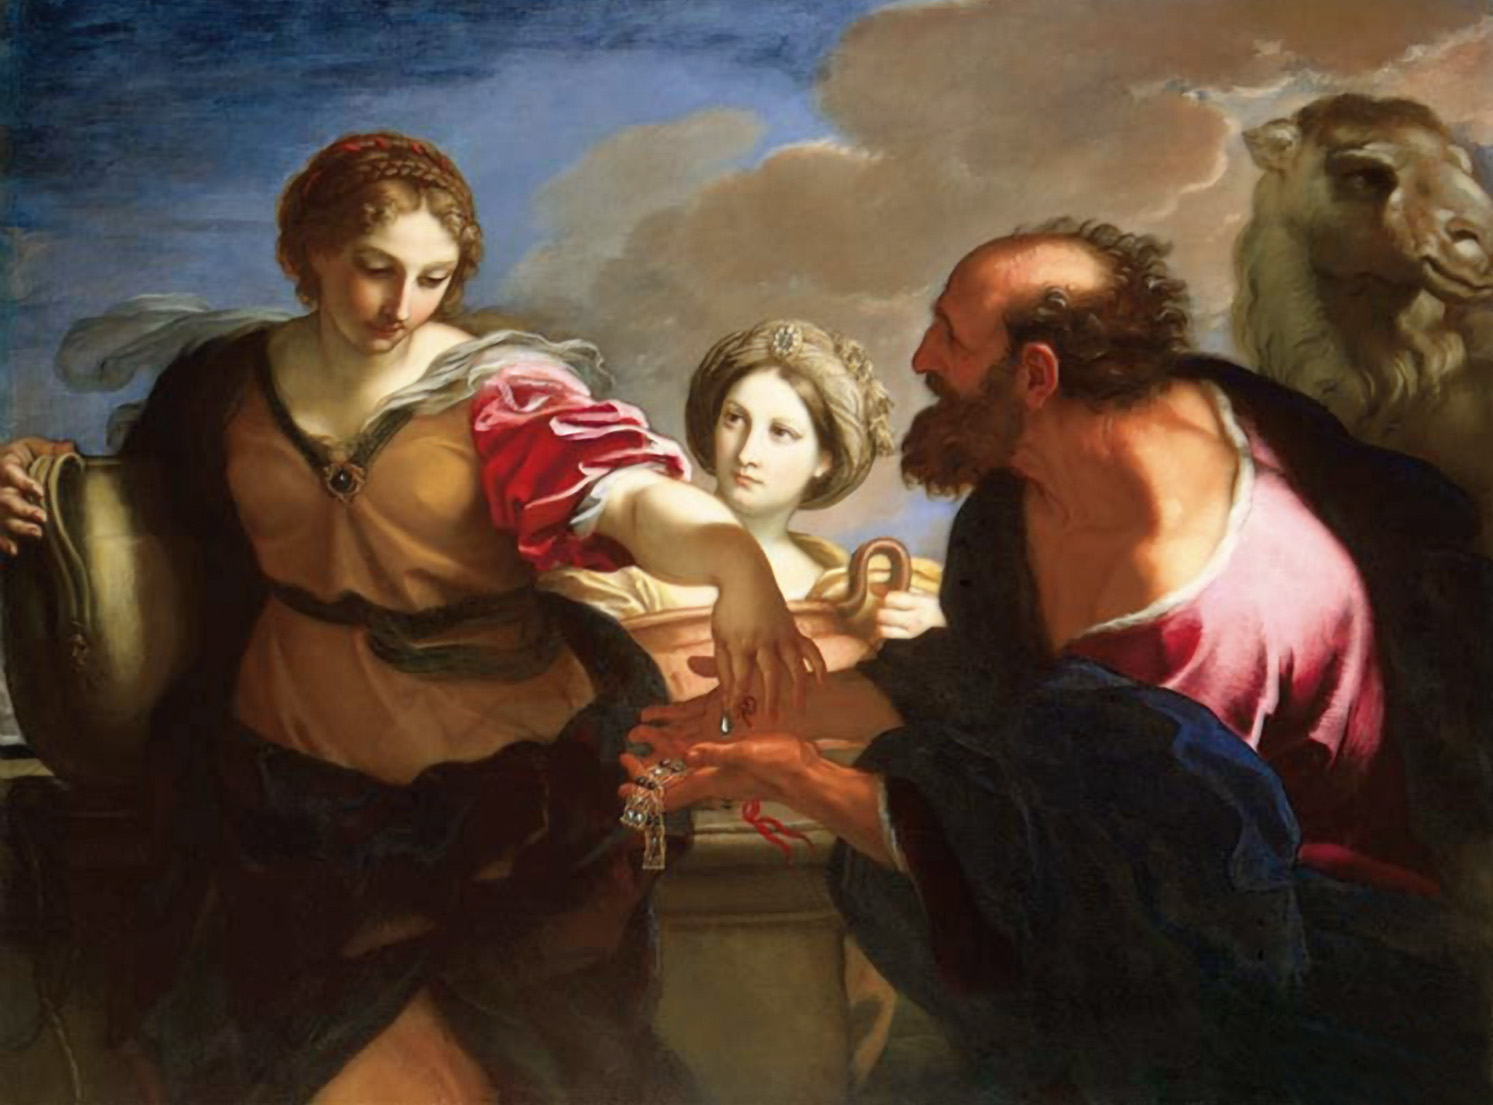 Η Ρεβέκκα και ο Ελιέζερ στο πηγάδι. Πίνακας του ιταλού ζωγράφου Carlo Maratta (1625-1713).